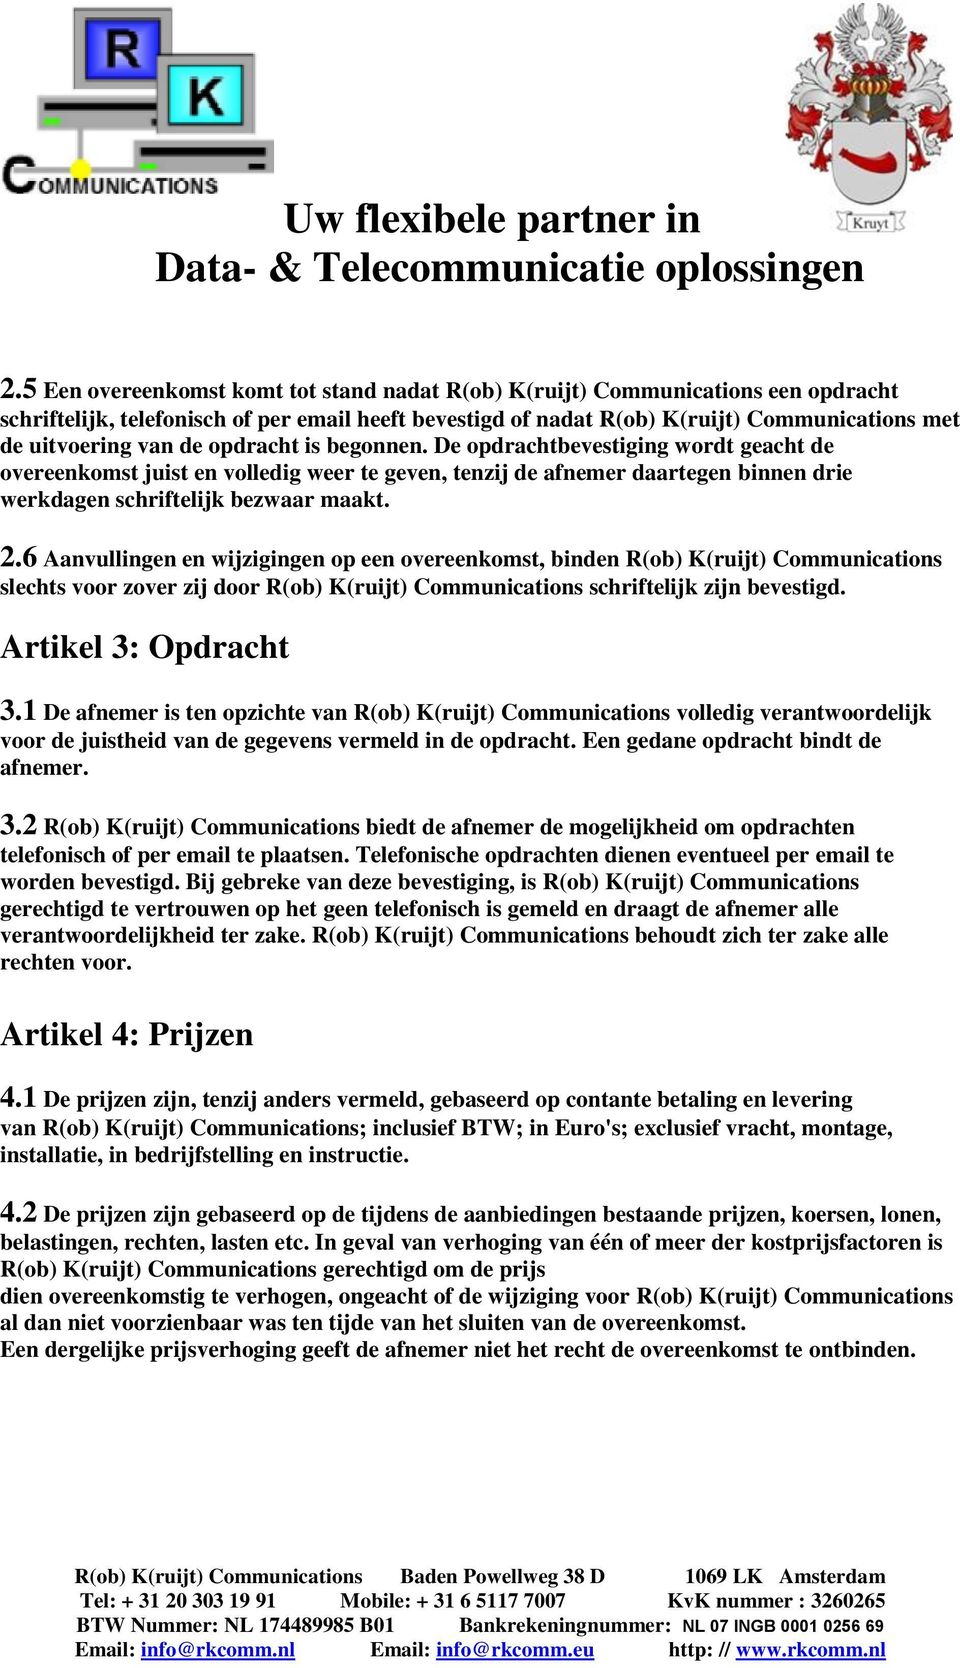 6 Aanvullingen en wijzigingen op een overeenkomst, binden R(ob) K(ruijt) Communications slechts voor zover zij door R(ob) K(ruijt) Communications schriftelijk zijn bevestigd. Artikel 3: Opdracht 3.